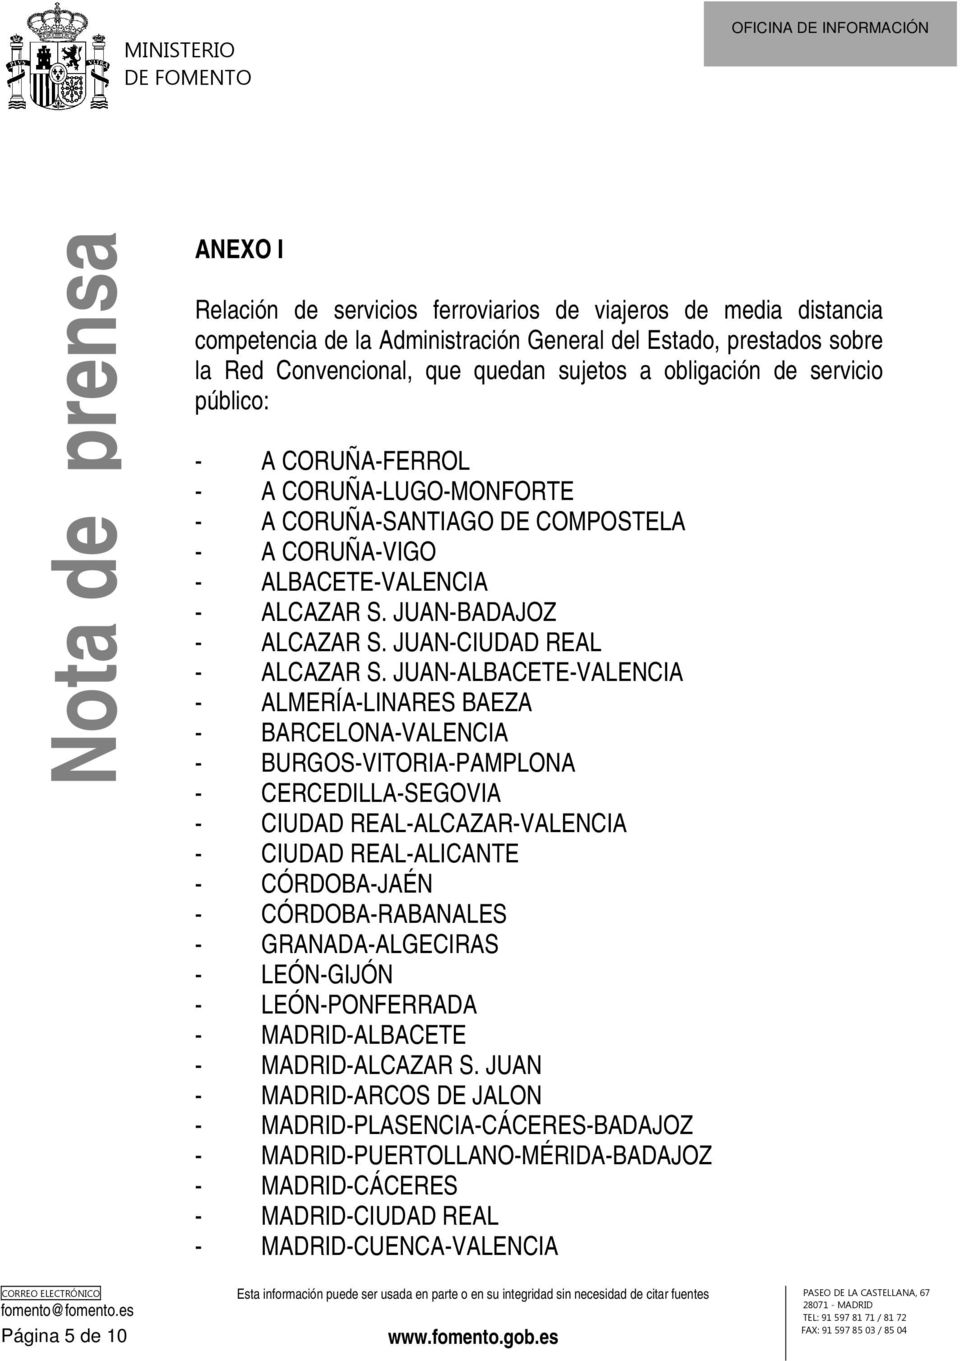 JUAN-ALBACETE-VALENCIA - ALMERÍA-LINARES BAEZA - BARCELONA-VALENCIA - BURGOS-VITORIA-PAMPLONA - CERCEDILLA-SEGOVIA - CIUDAD REAL-ALCAZAR-VALENCIA - CIUDAD REAL-ALICANTE - CÓRDOBA-JAÉN -